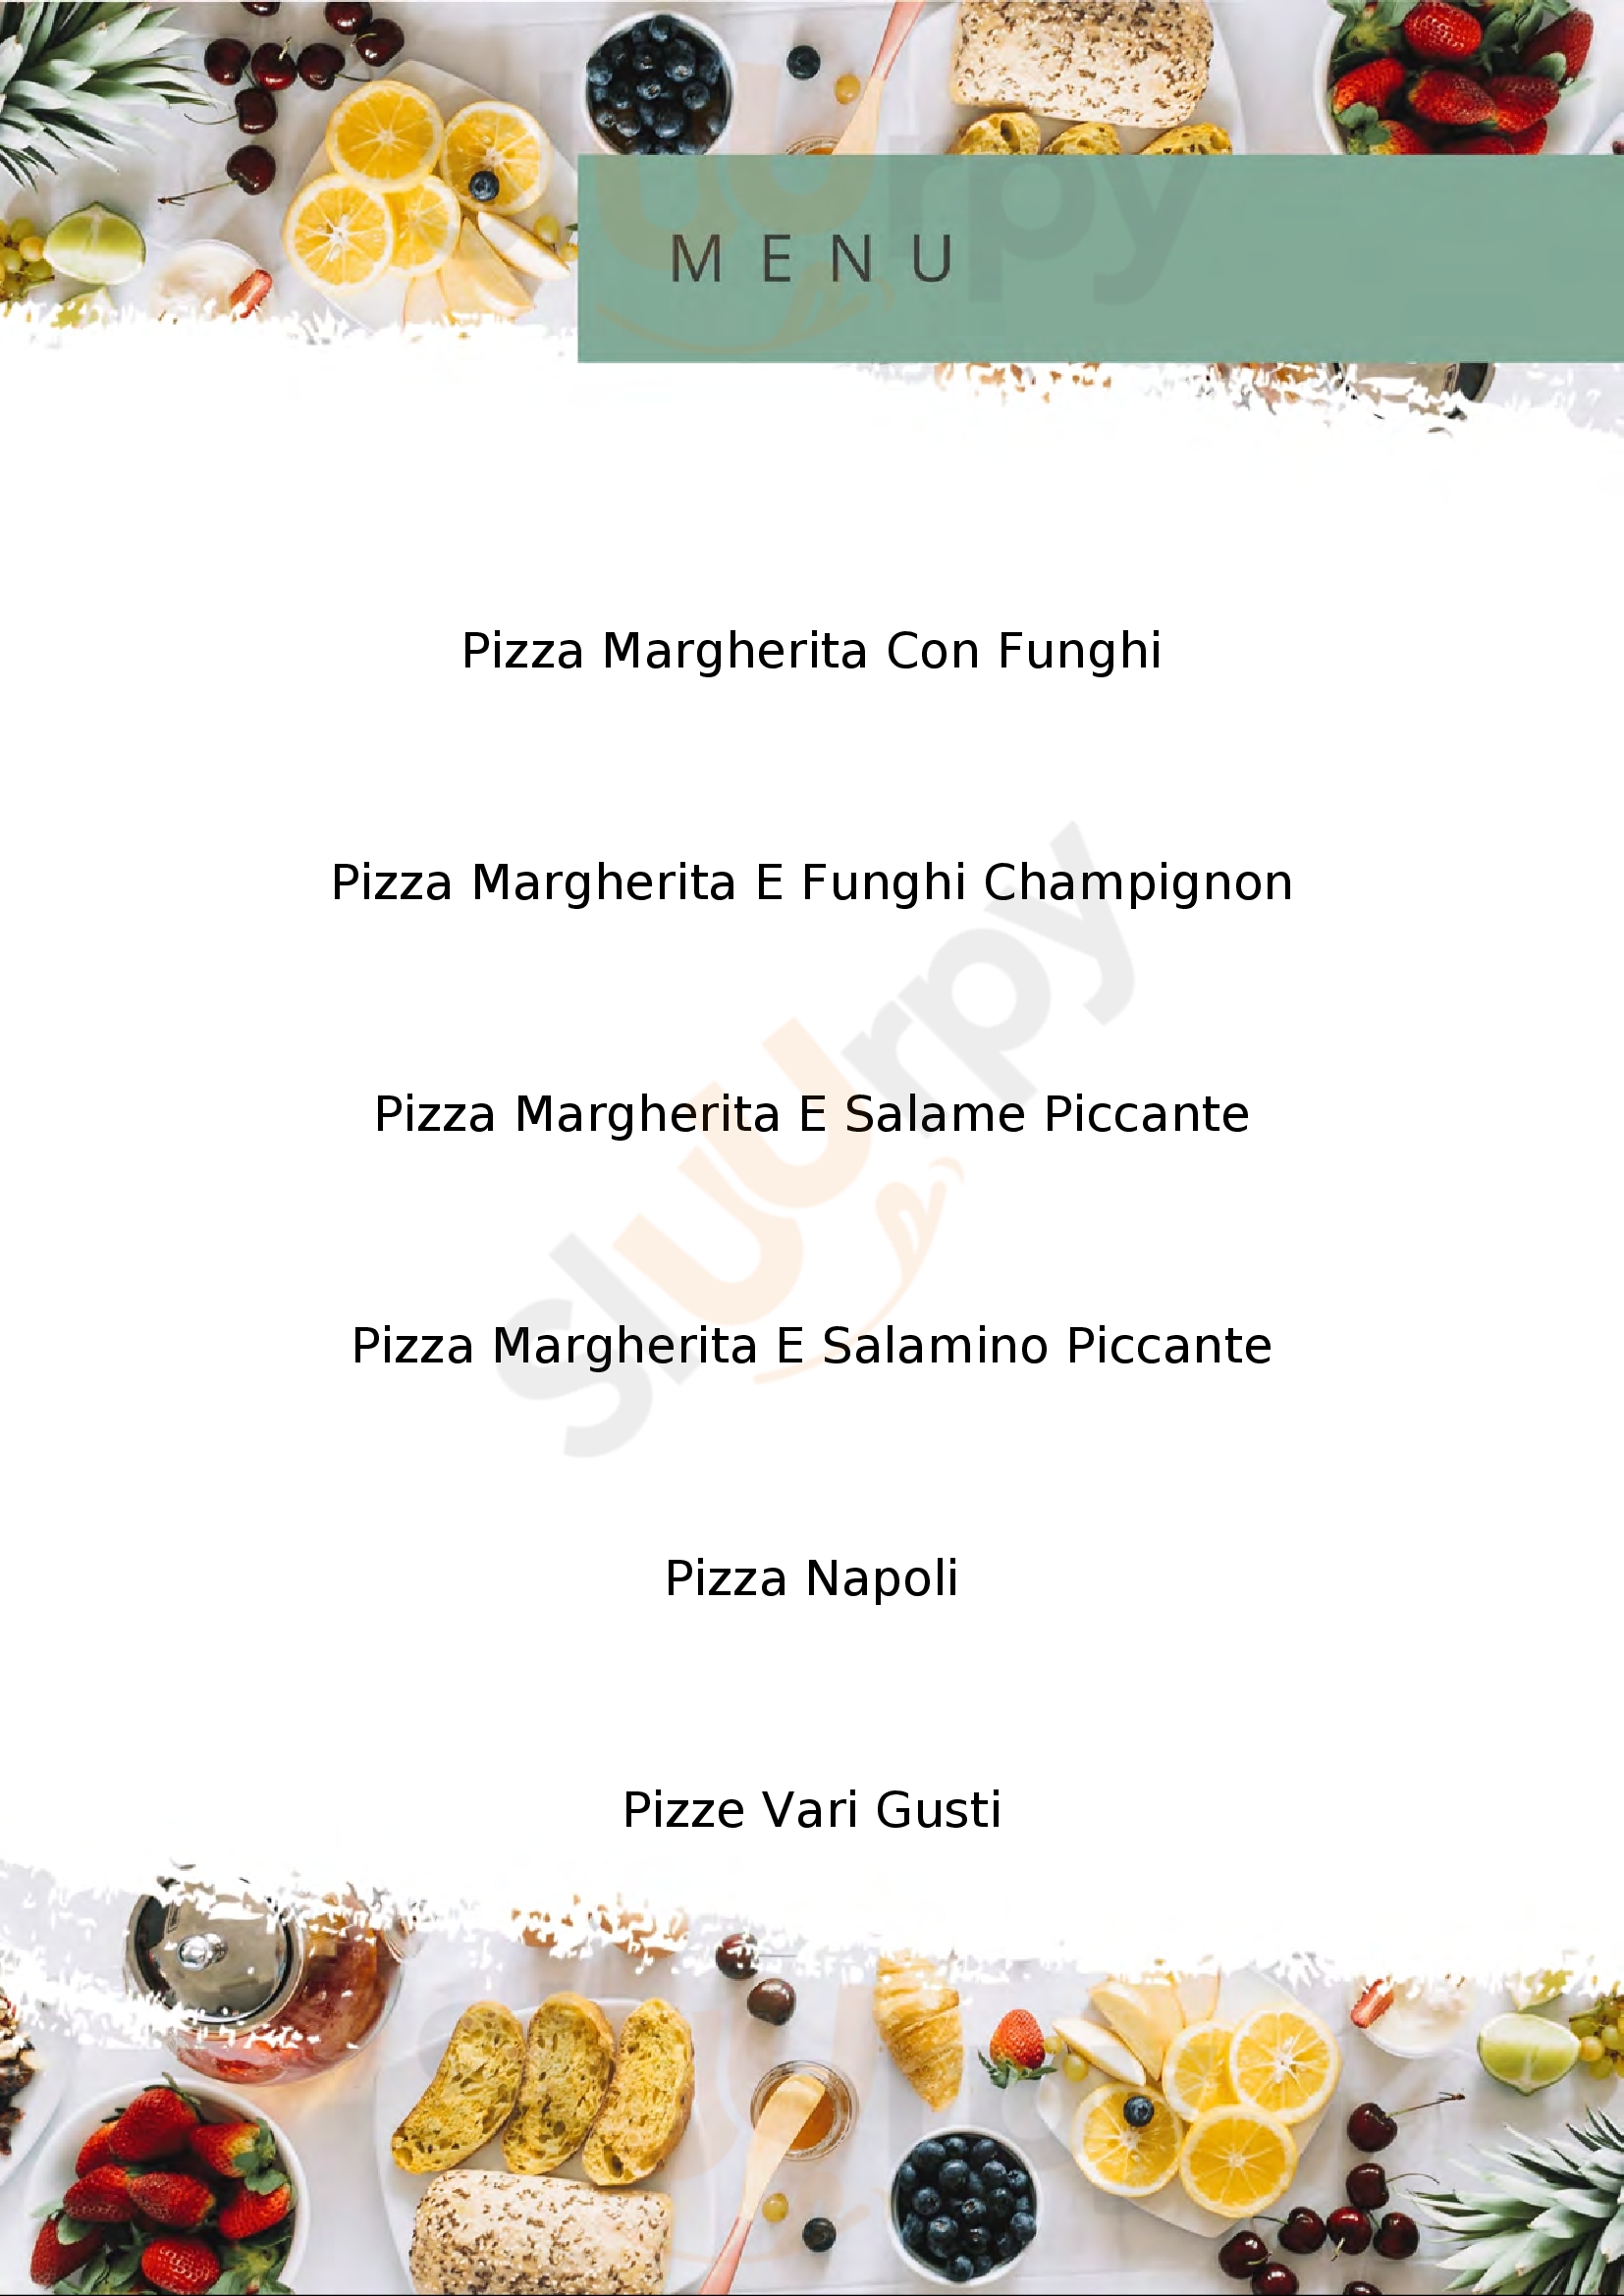 Pizzeria da Carlo Massa Marittima menù 1 pagina